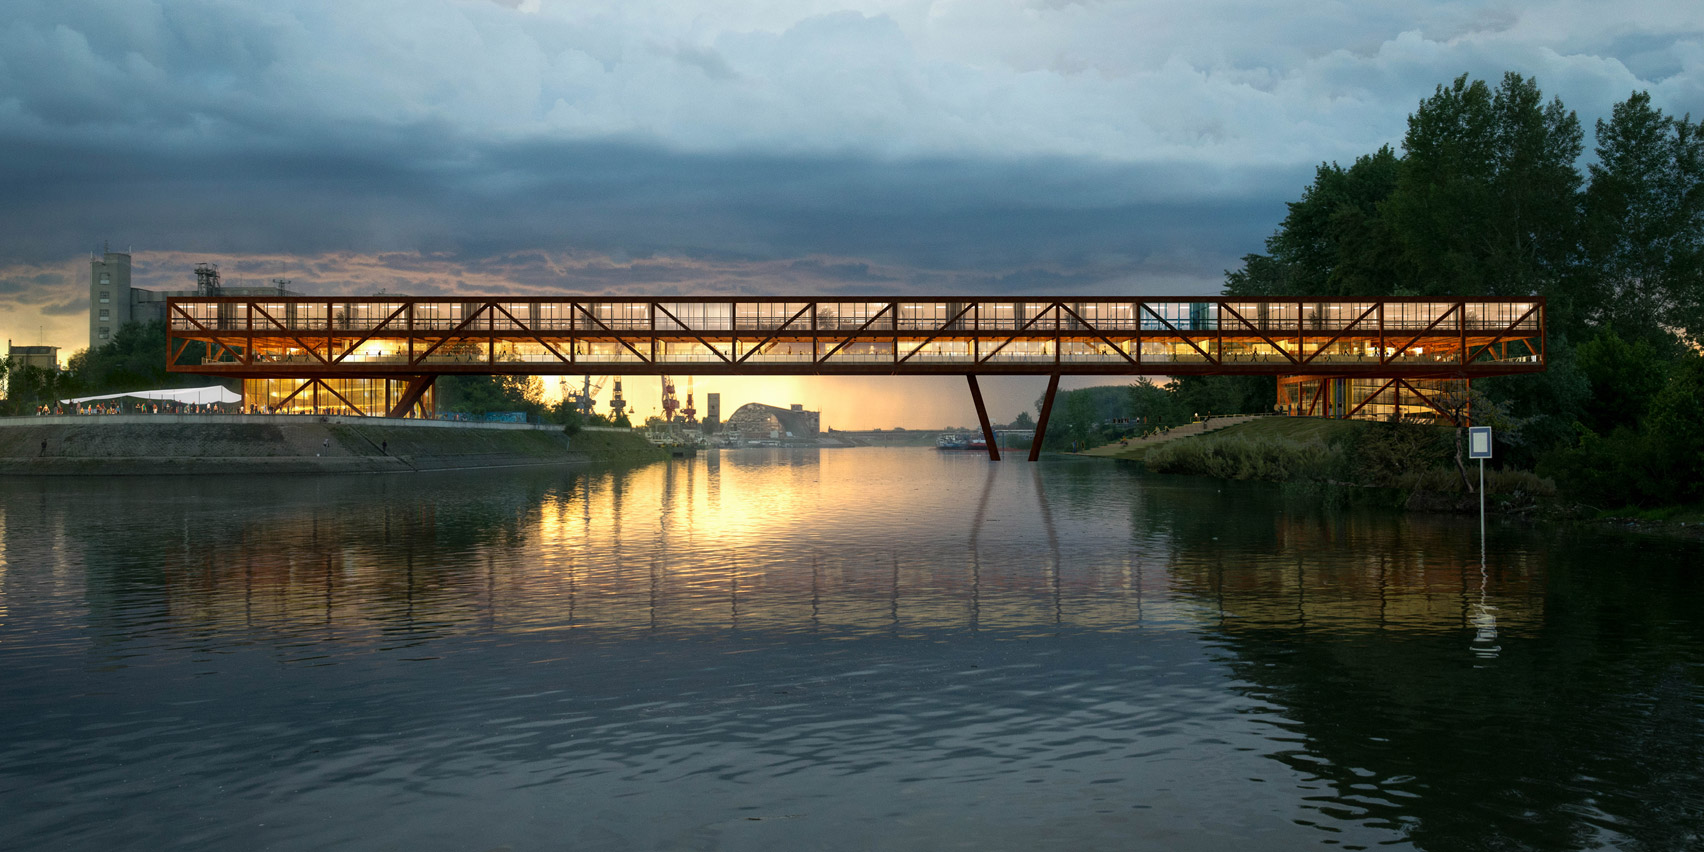 Snimanje dronom photo sky art Projekat ‘Senka na lakat’, most preko Dunava Novi Sad